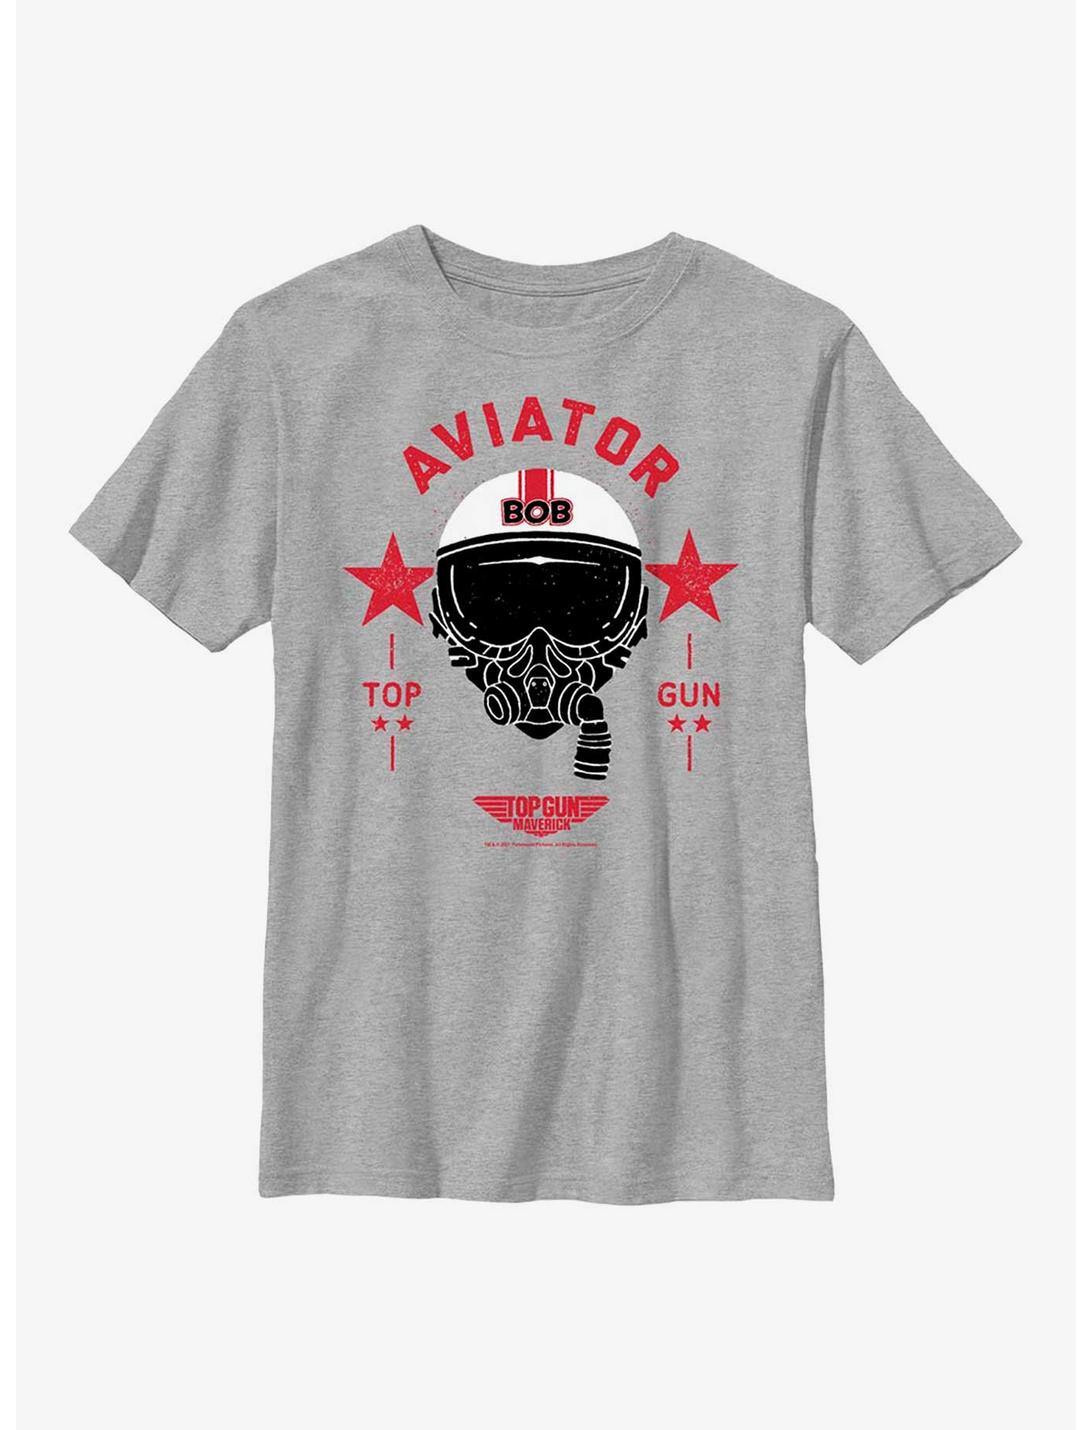 Top Gun: Maverick Bob Aviator Youth T-Shirt, ATH HTR, hi-res